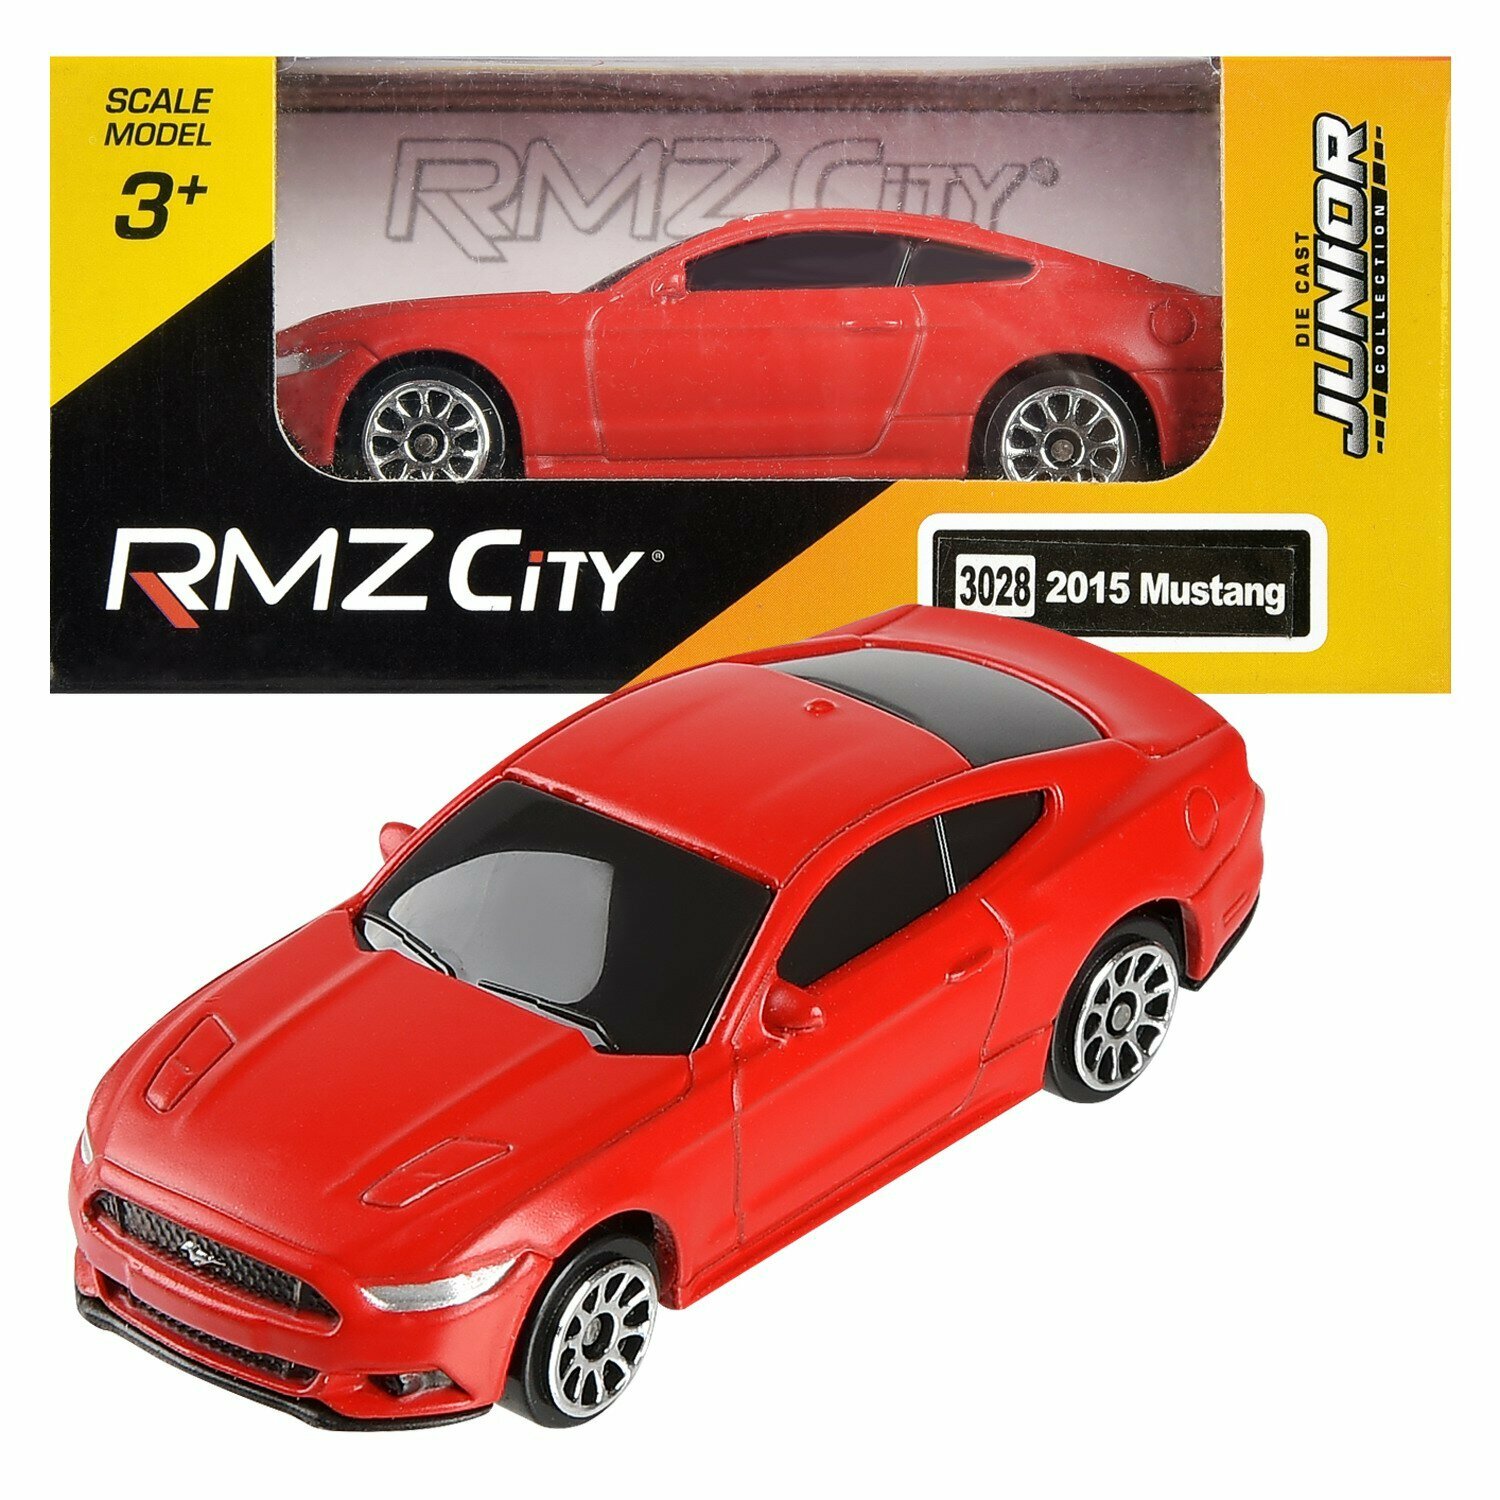 Машинка металлическая Uni-Fortune RMZ City 1:64 Ford Mustang 2015, без механизмов, цвет красный матовый,